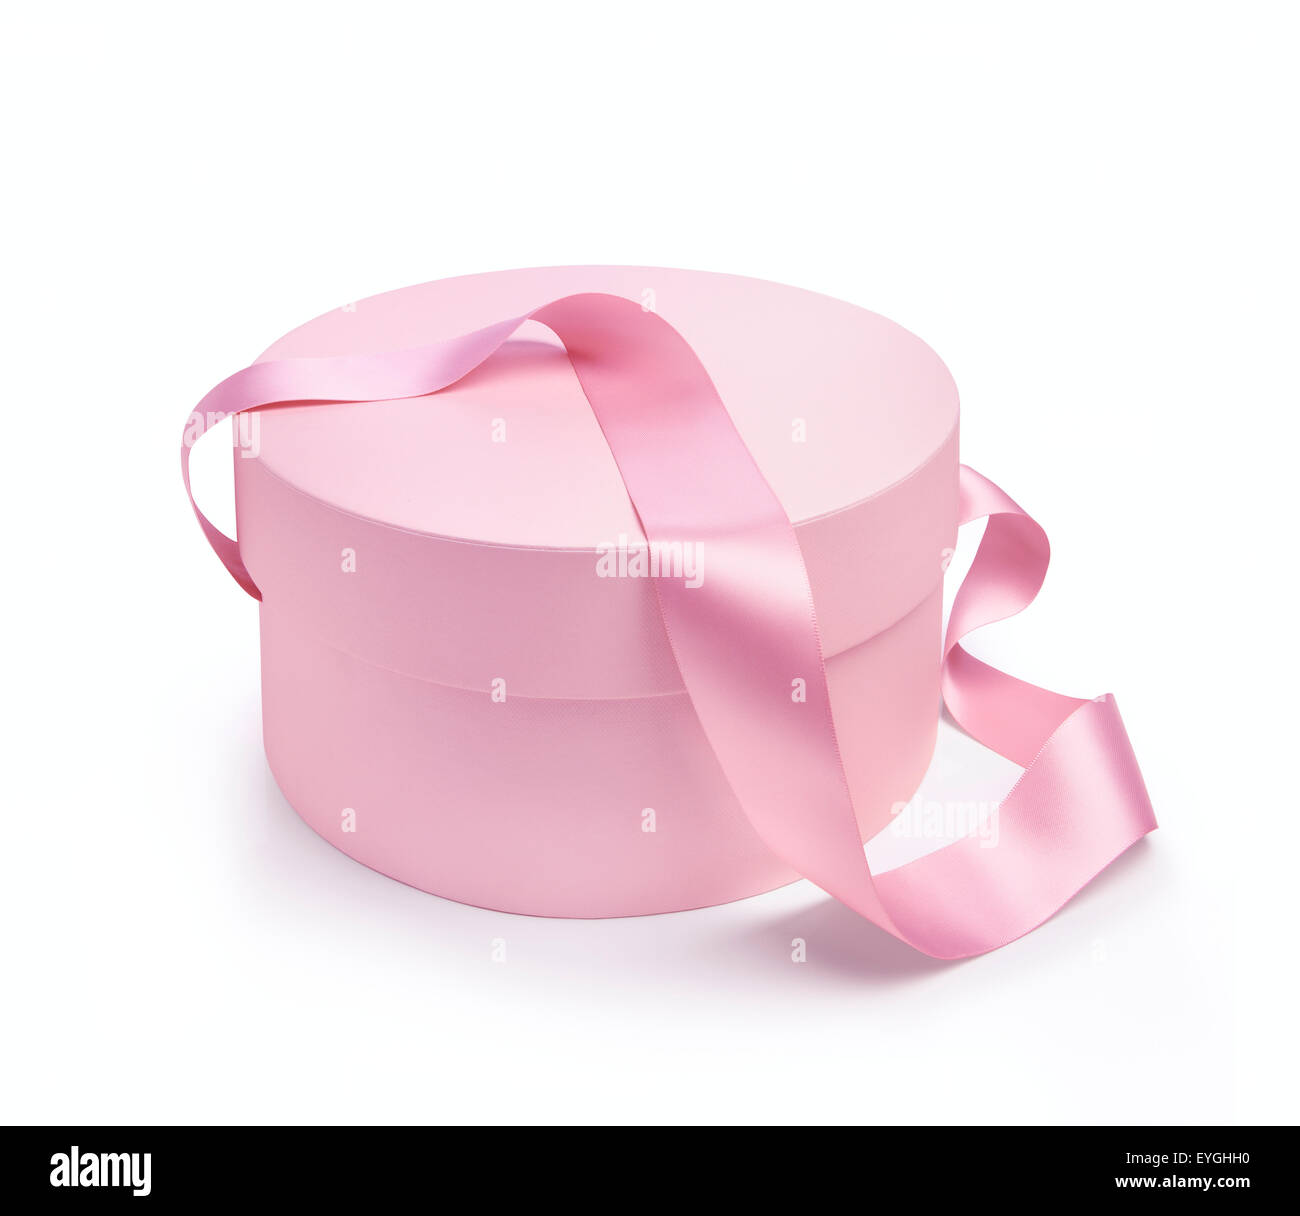 Dono forma rotonda scatola in colore rosa con nastro di maniglia. Isolato su sfondo bianco Foto Stock